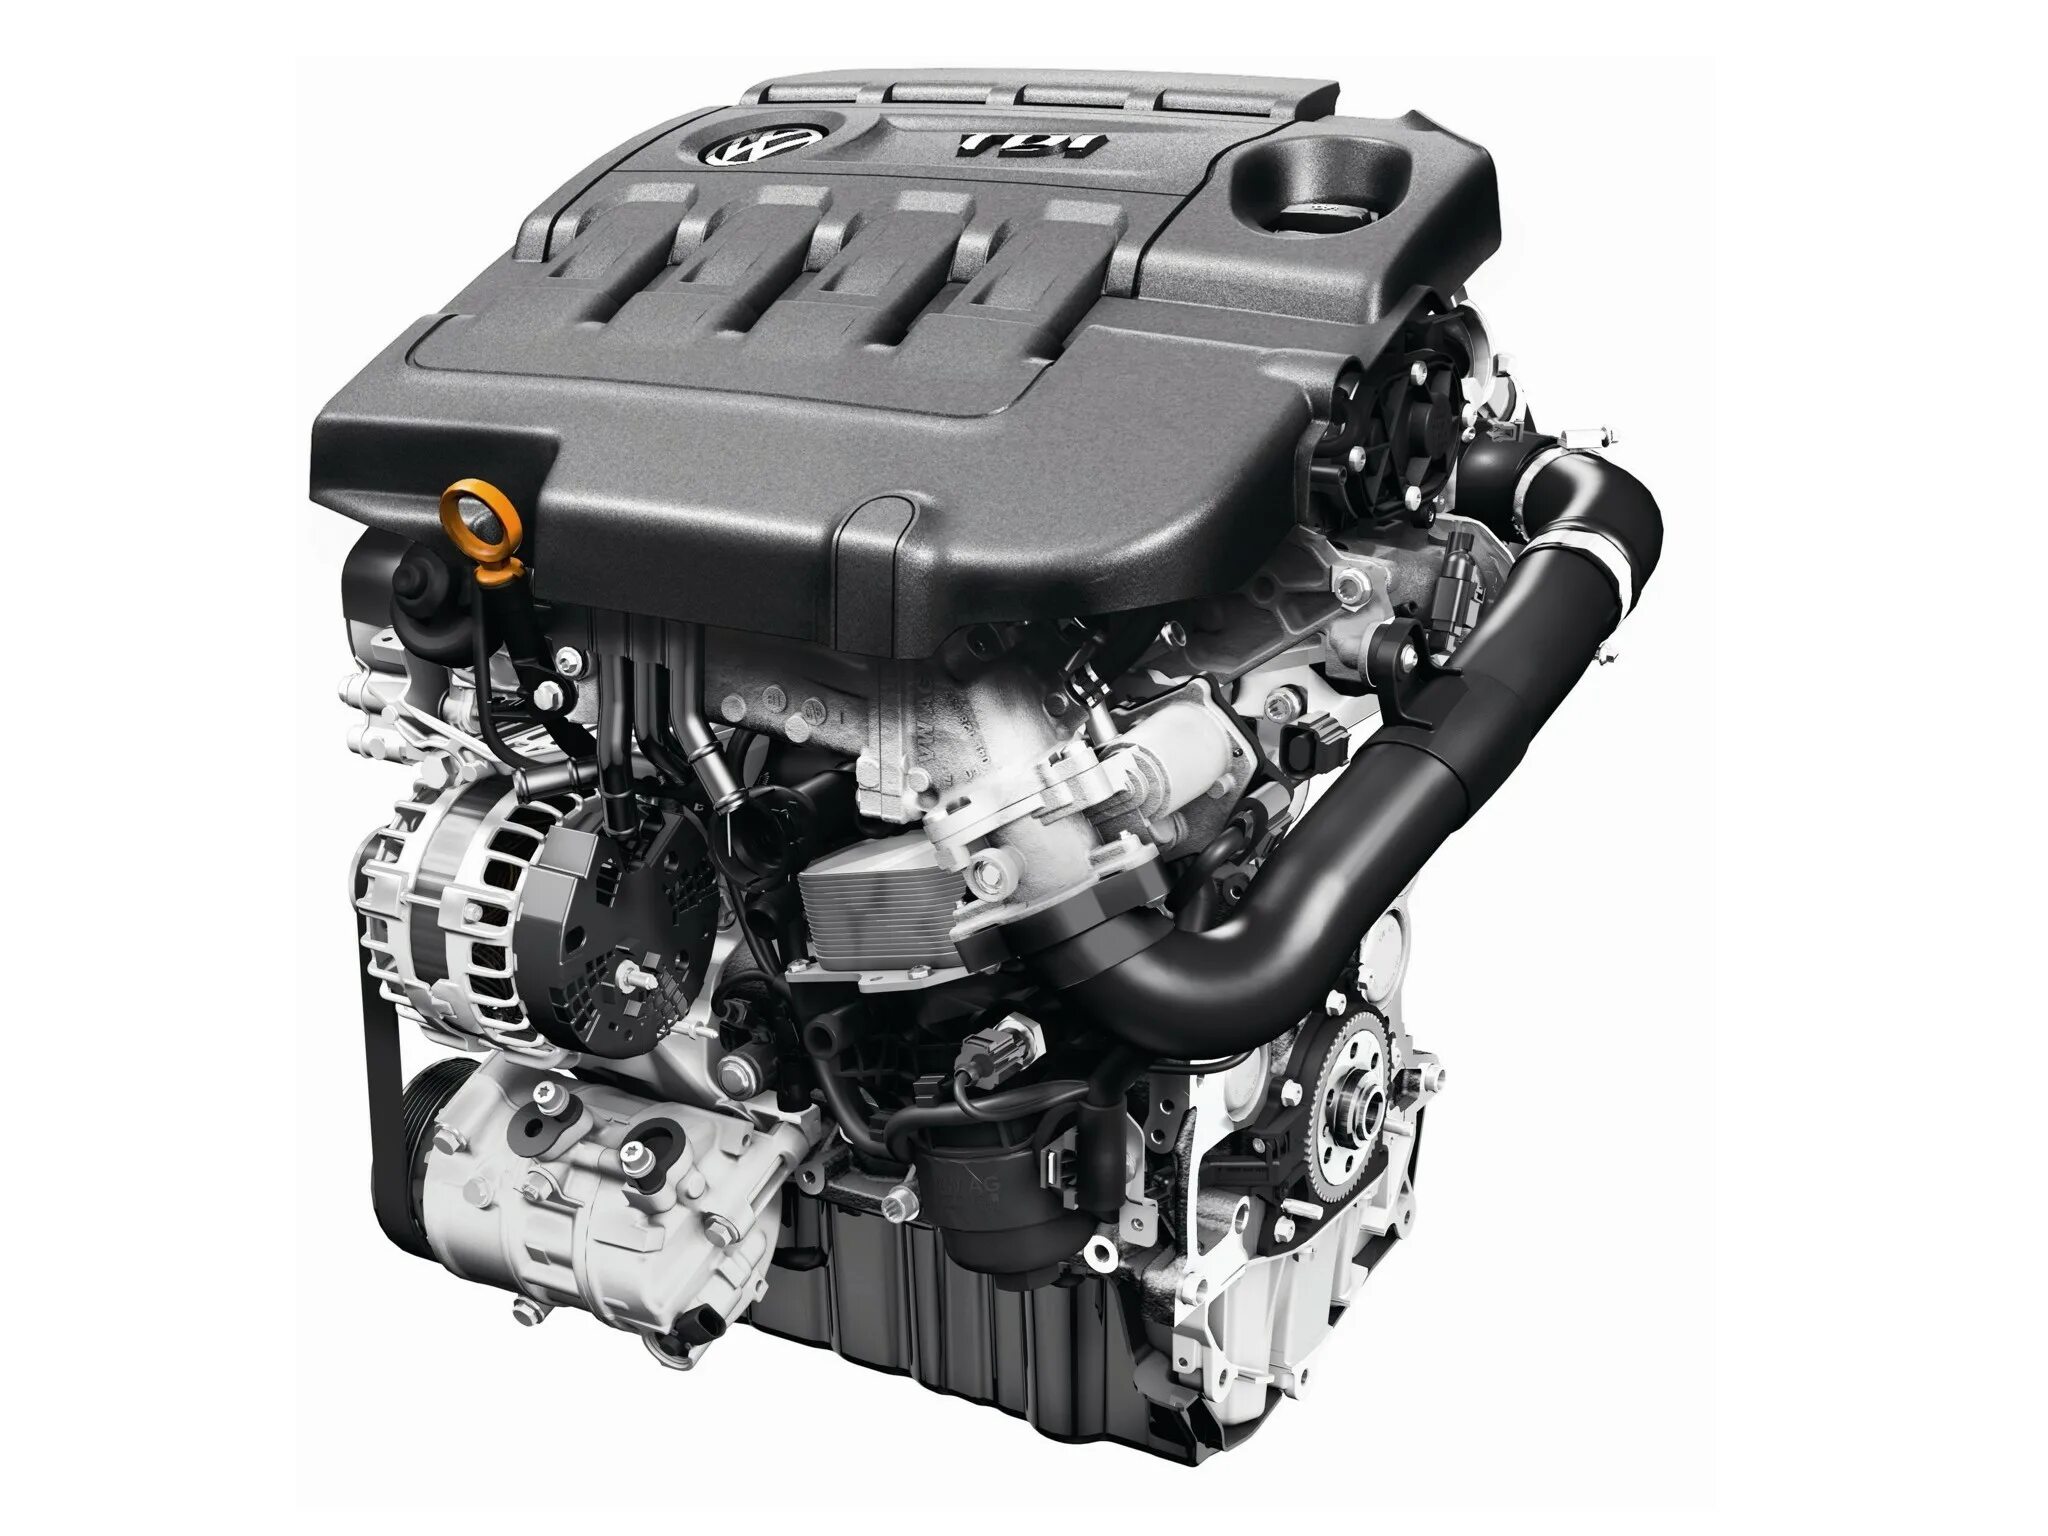 Двигатель VW 2.0 TDI. Двигатель ea288 150 л.с 2.0 TDI. Фольксваген,2.0 дизель 140 л.с. 2.0 TDI 140 Л.С дизель. Двигатель на автомобиль volkswagen